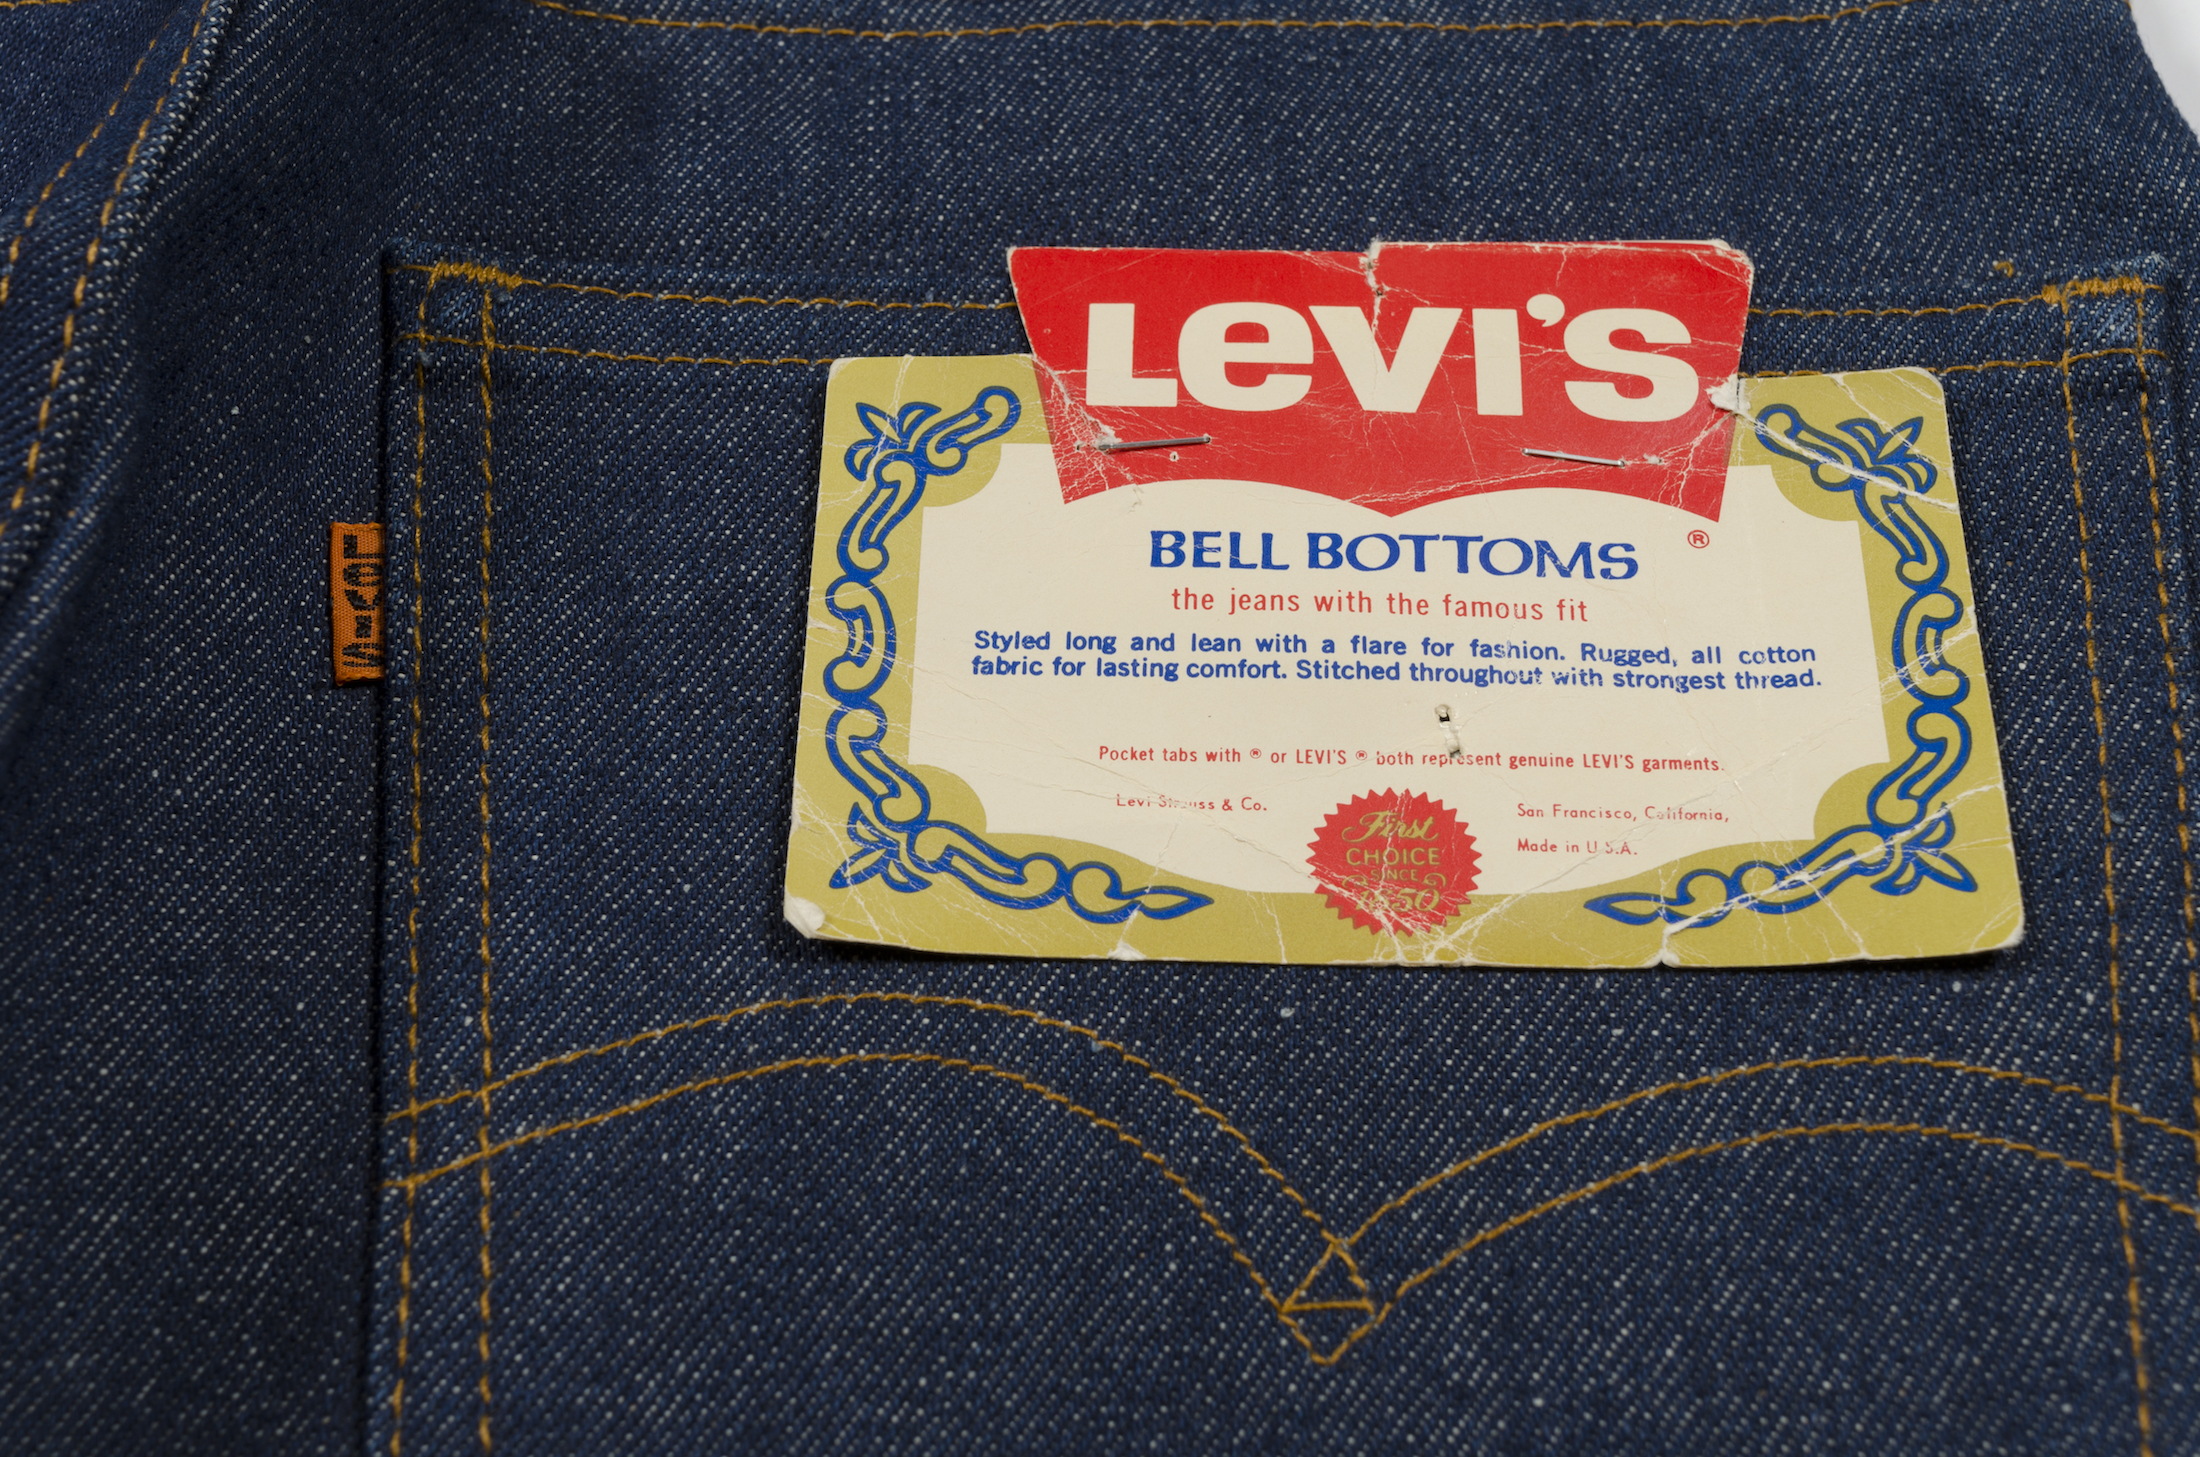 bell bottoms